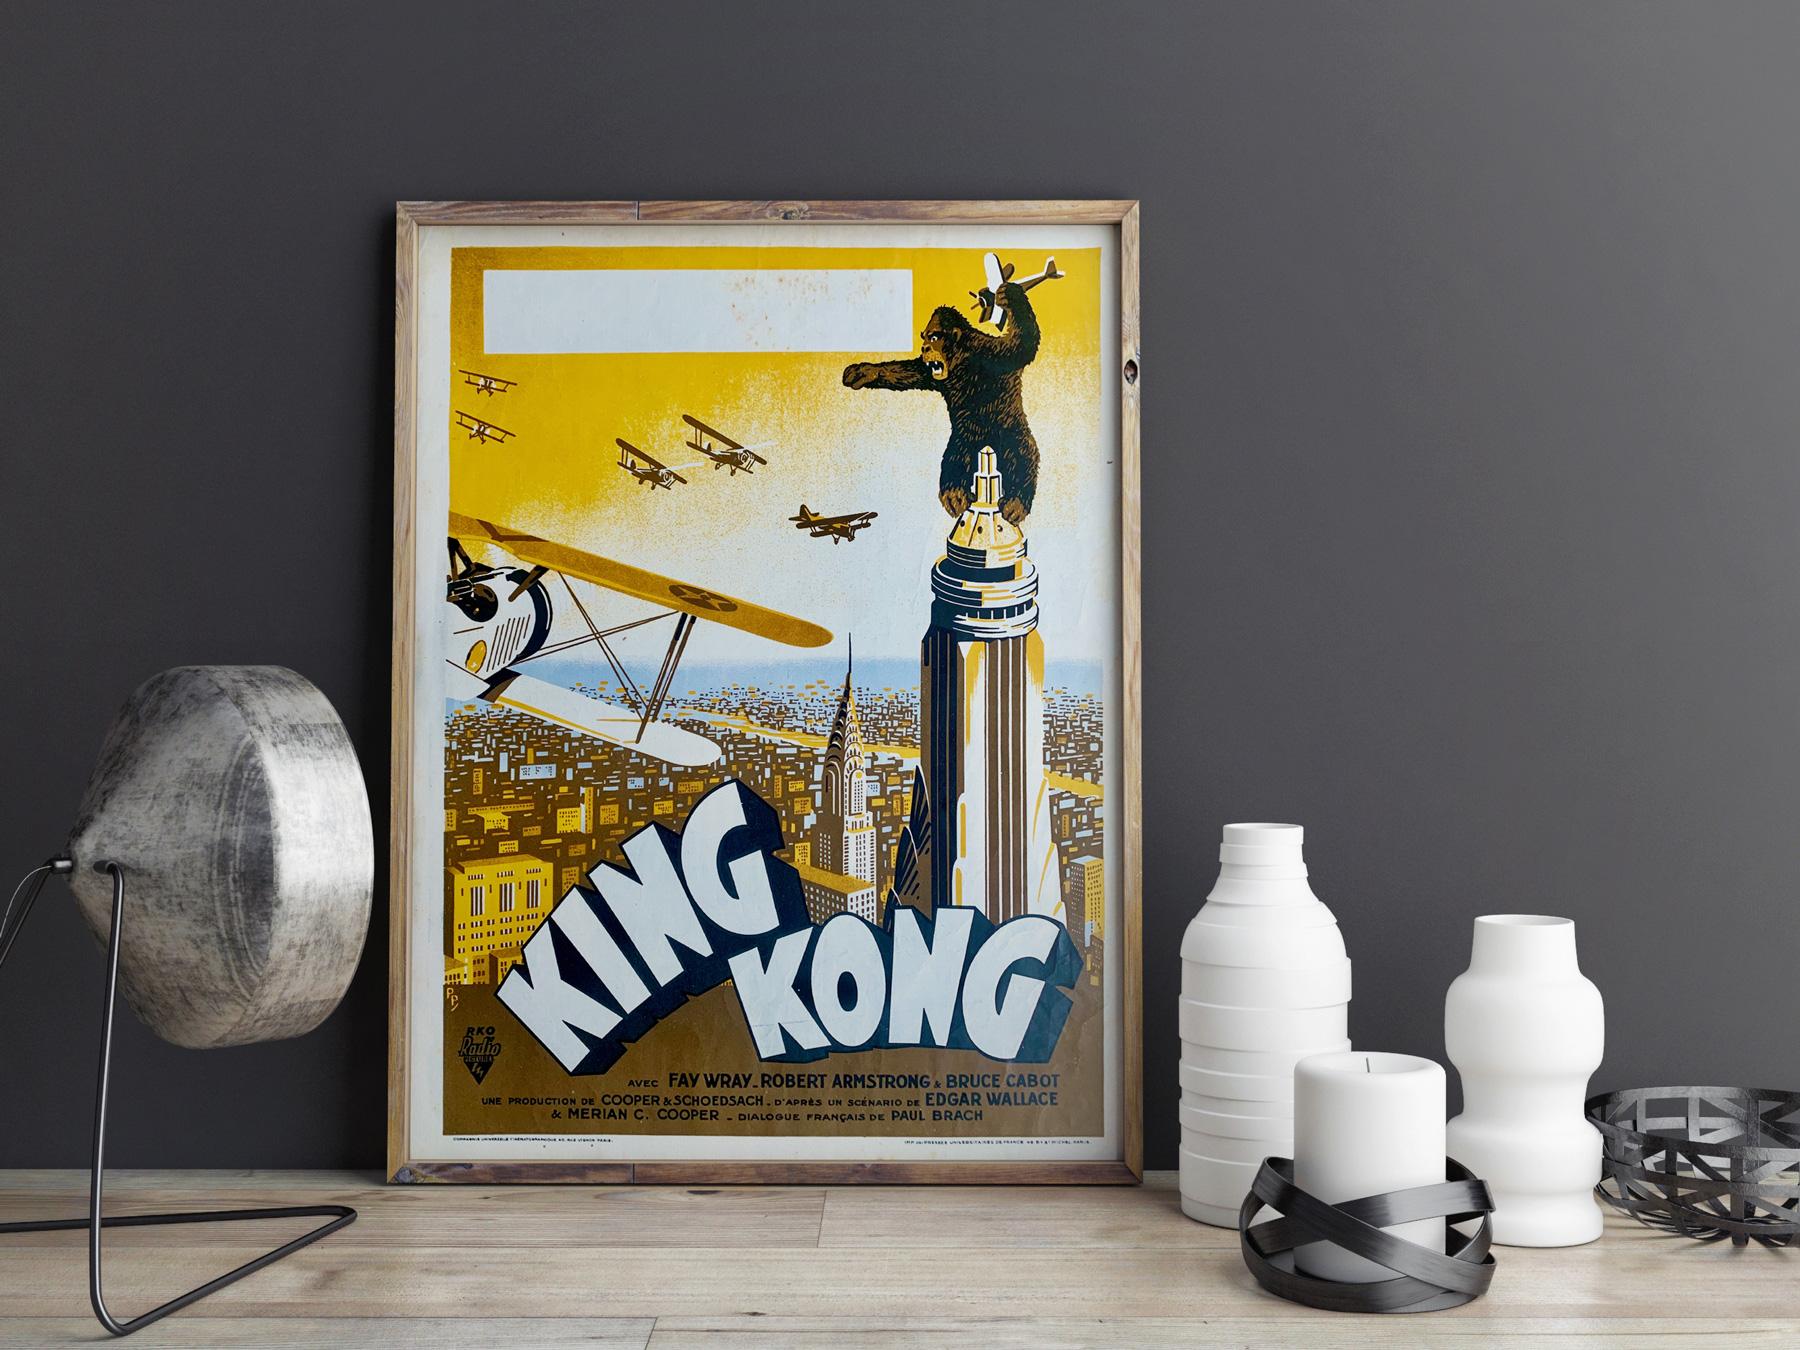 Affiche française incroyablement rare de la première année de sortie du film de monstre américain King Kong. Nous adorons le design de Pierre Pigeot, une affiche petite, mais puissante, pour ce classique indéniable.

Plusieurs styles d'affiches ont